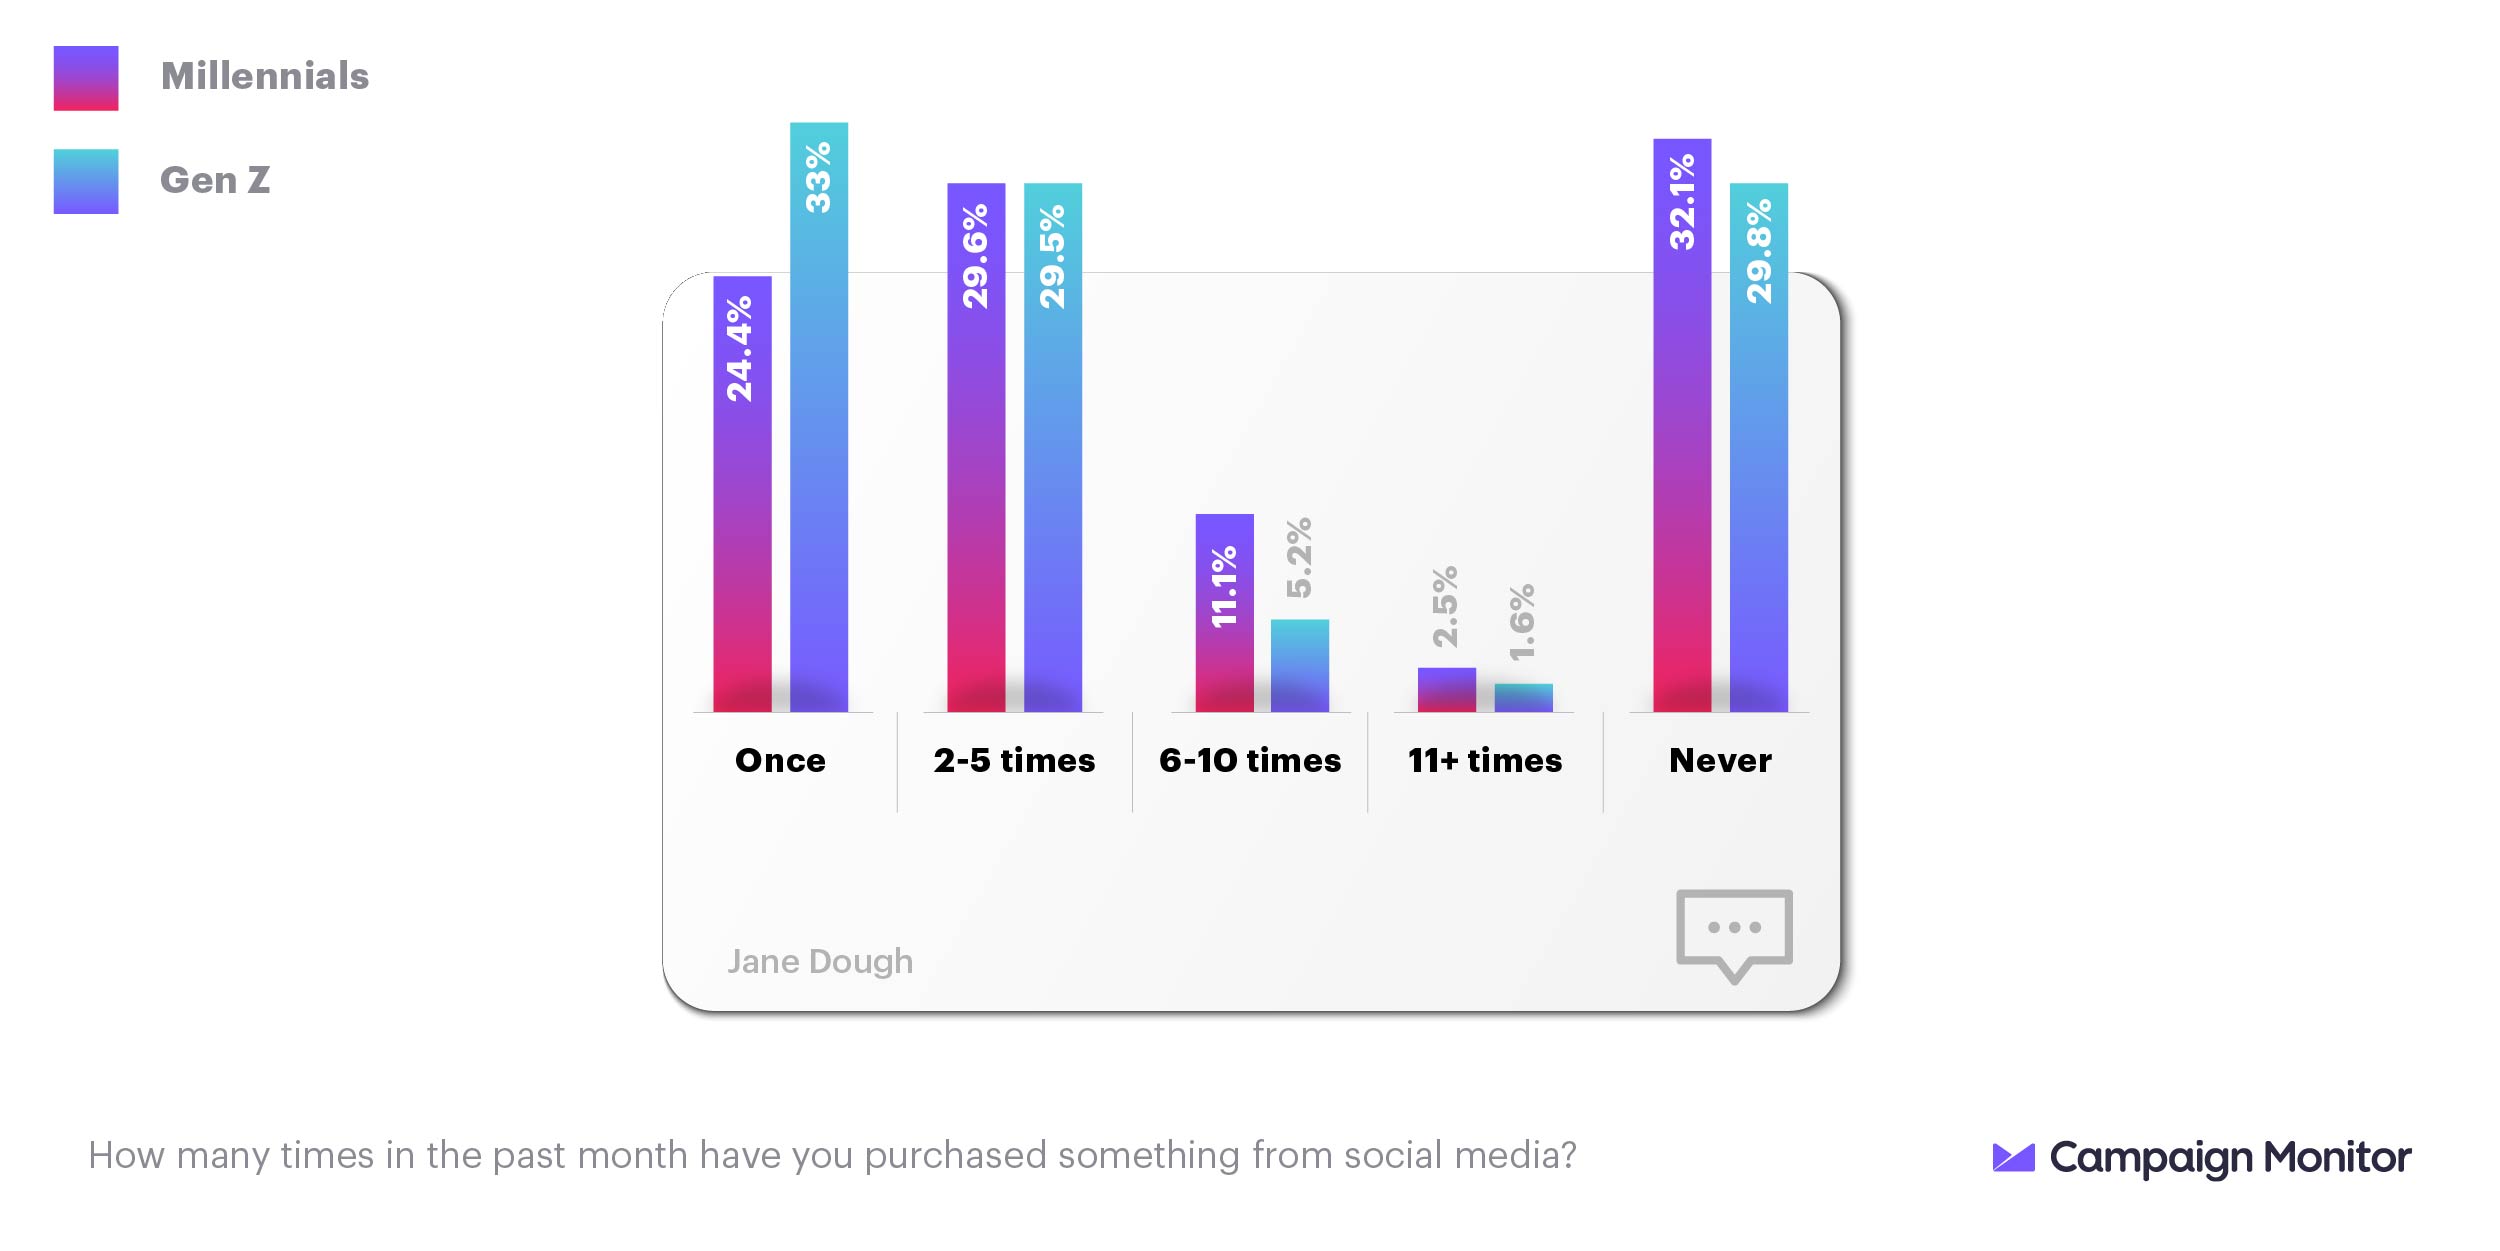 millennials vs. get z social media purchases statistics